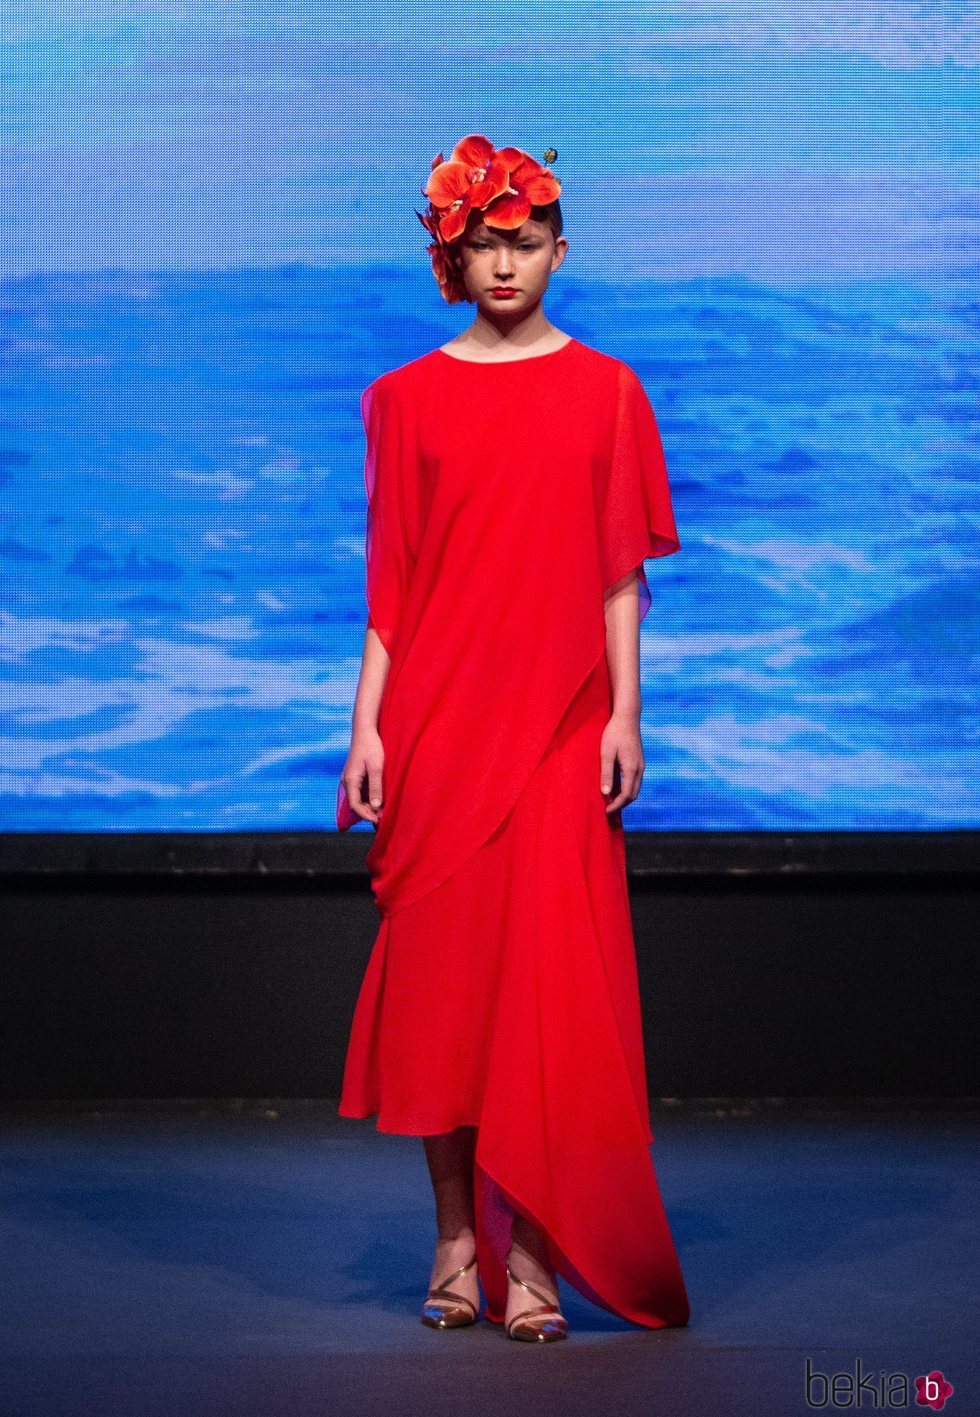 Vestido rojo asimétrico de la colección crucero de Juan Duyos para 'Alta Mar'